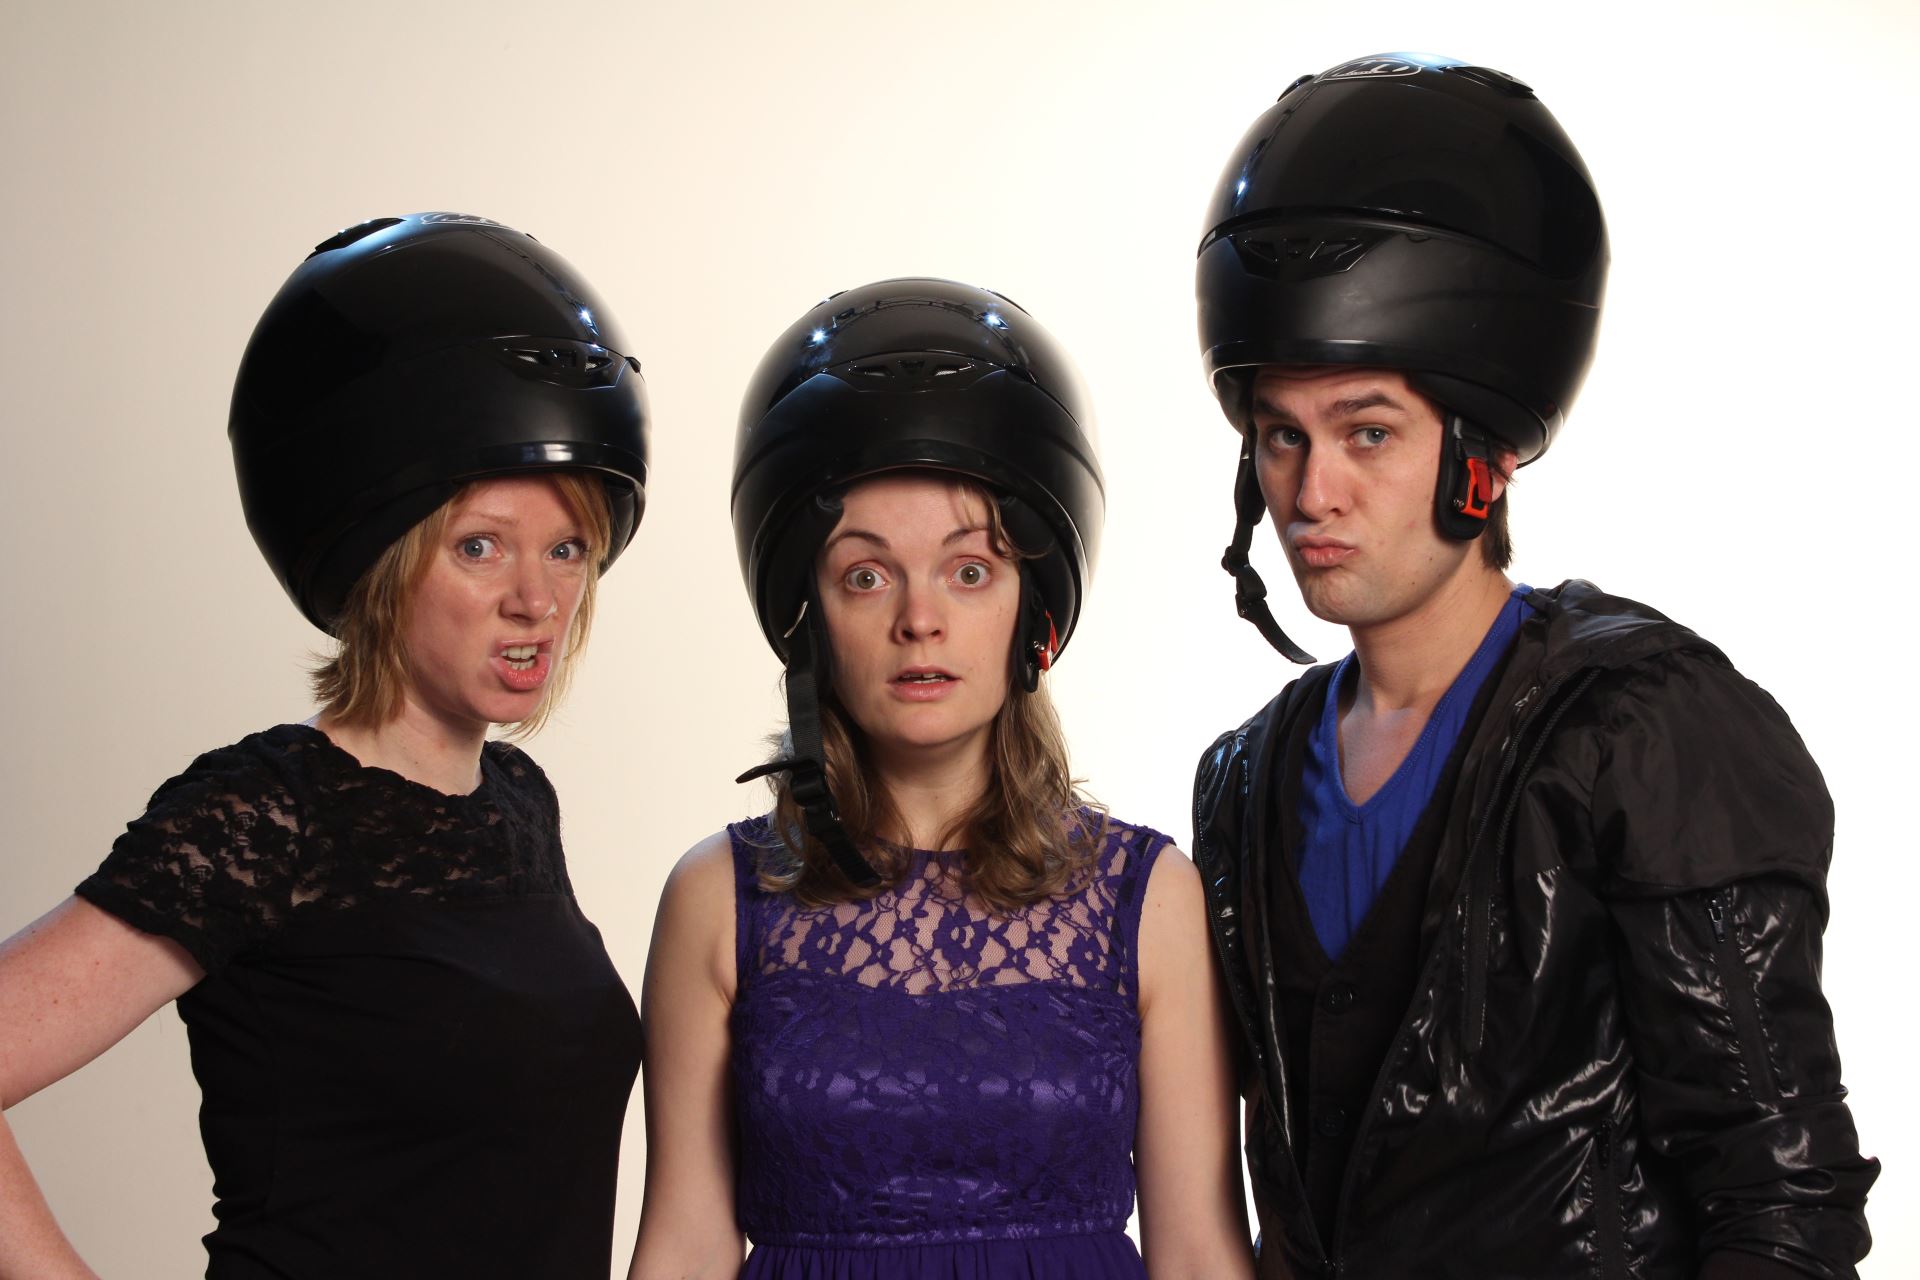 Twee vrouwen en een man met een zwarte helm boven op hun hoofd waarbij gezicht zichtbaar is.